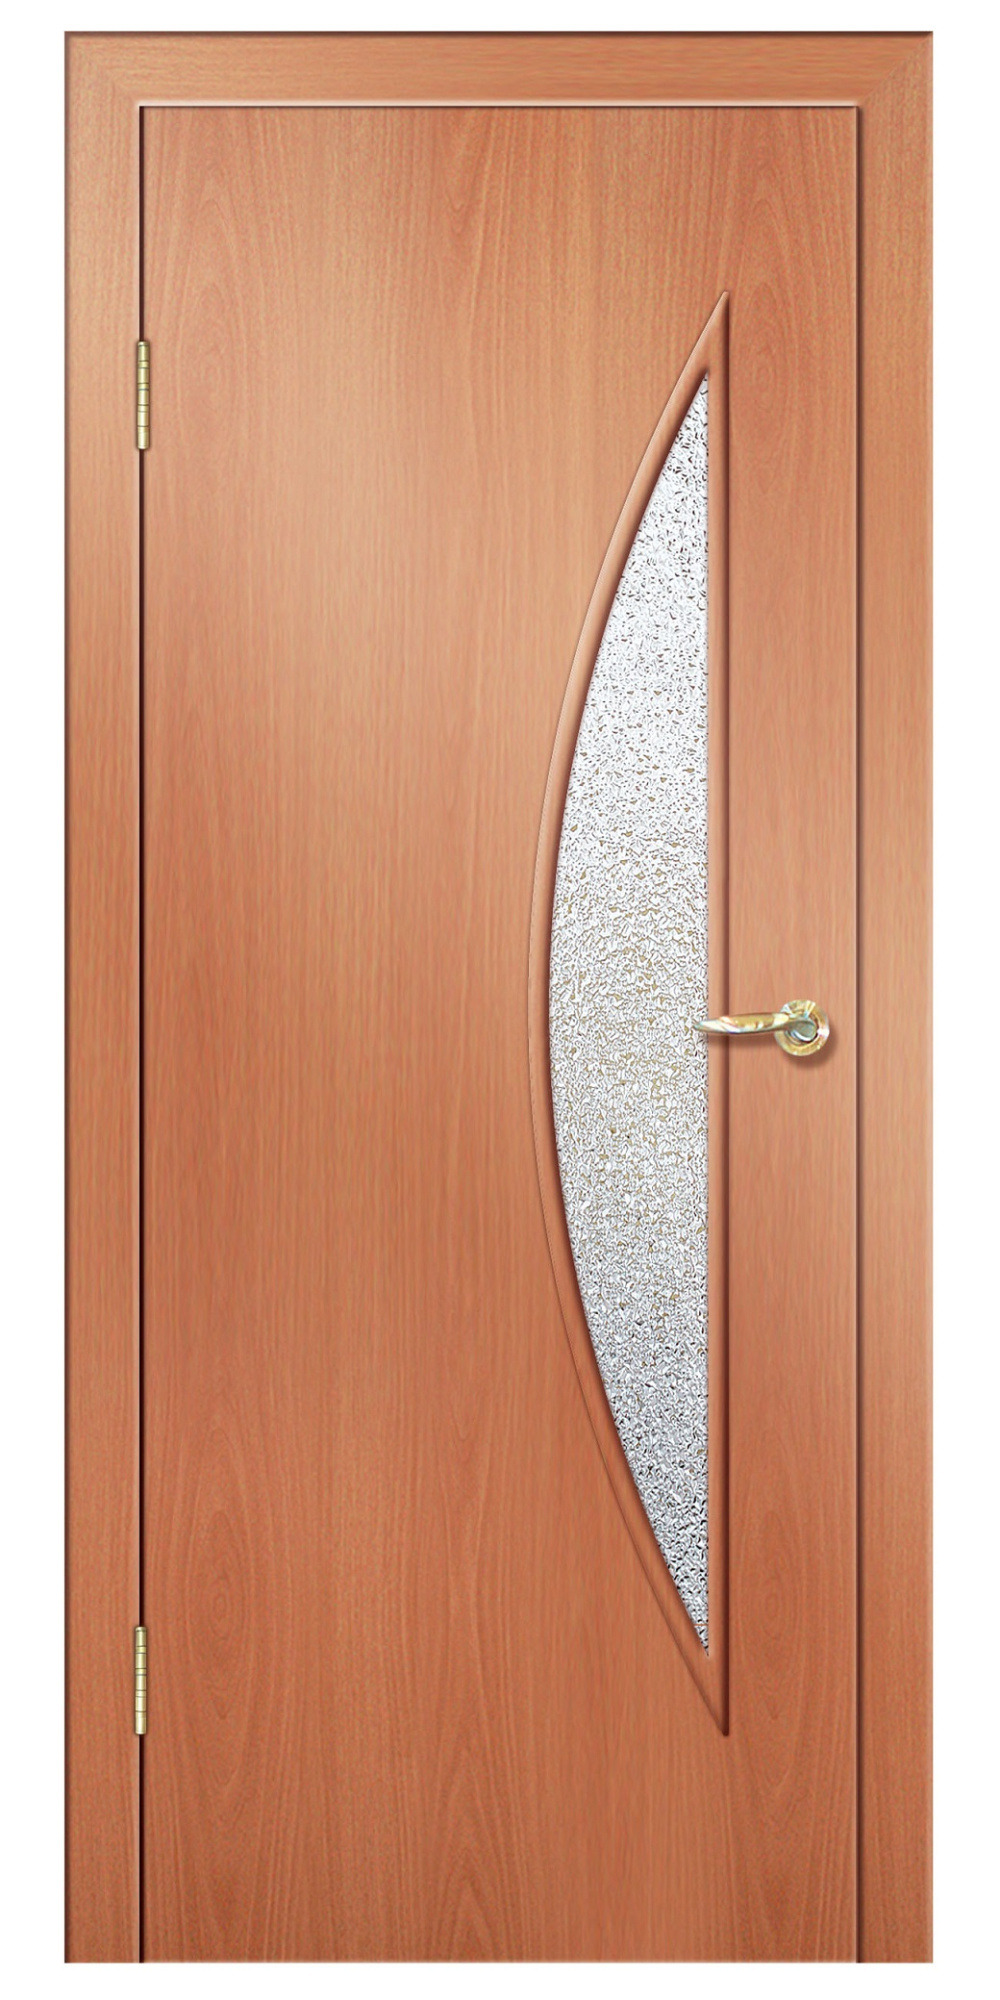 фото Дверь межкомнатная дверная линия до-06 900х2000 мм миланский орех/бежевая 21-10 диамант ла